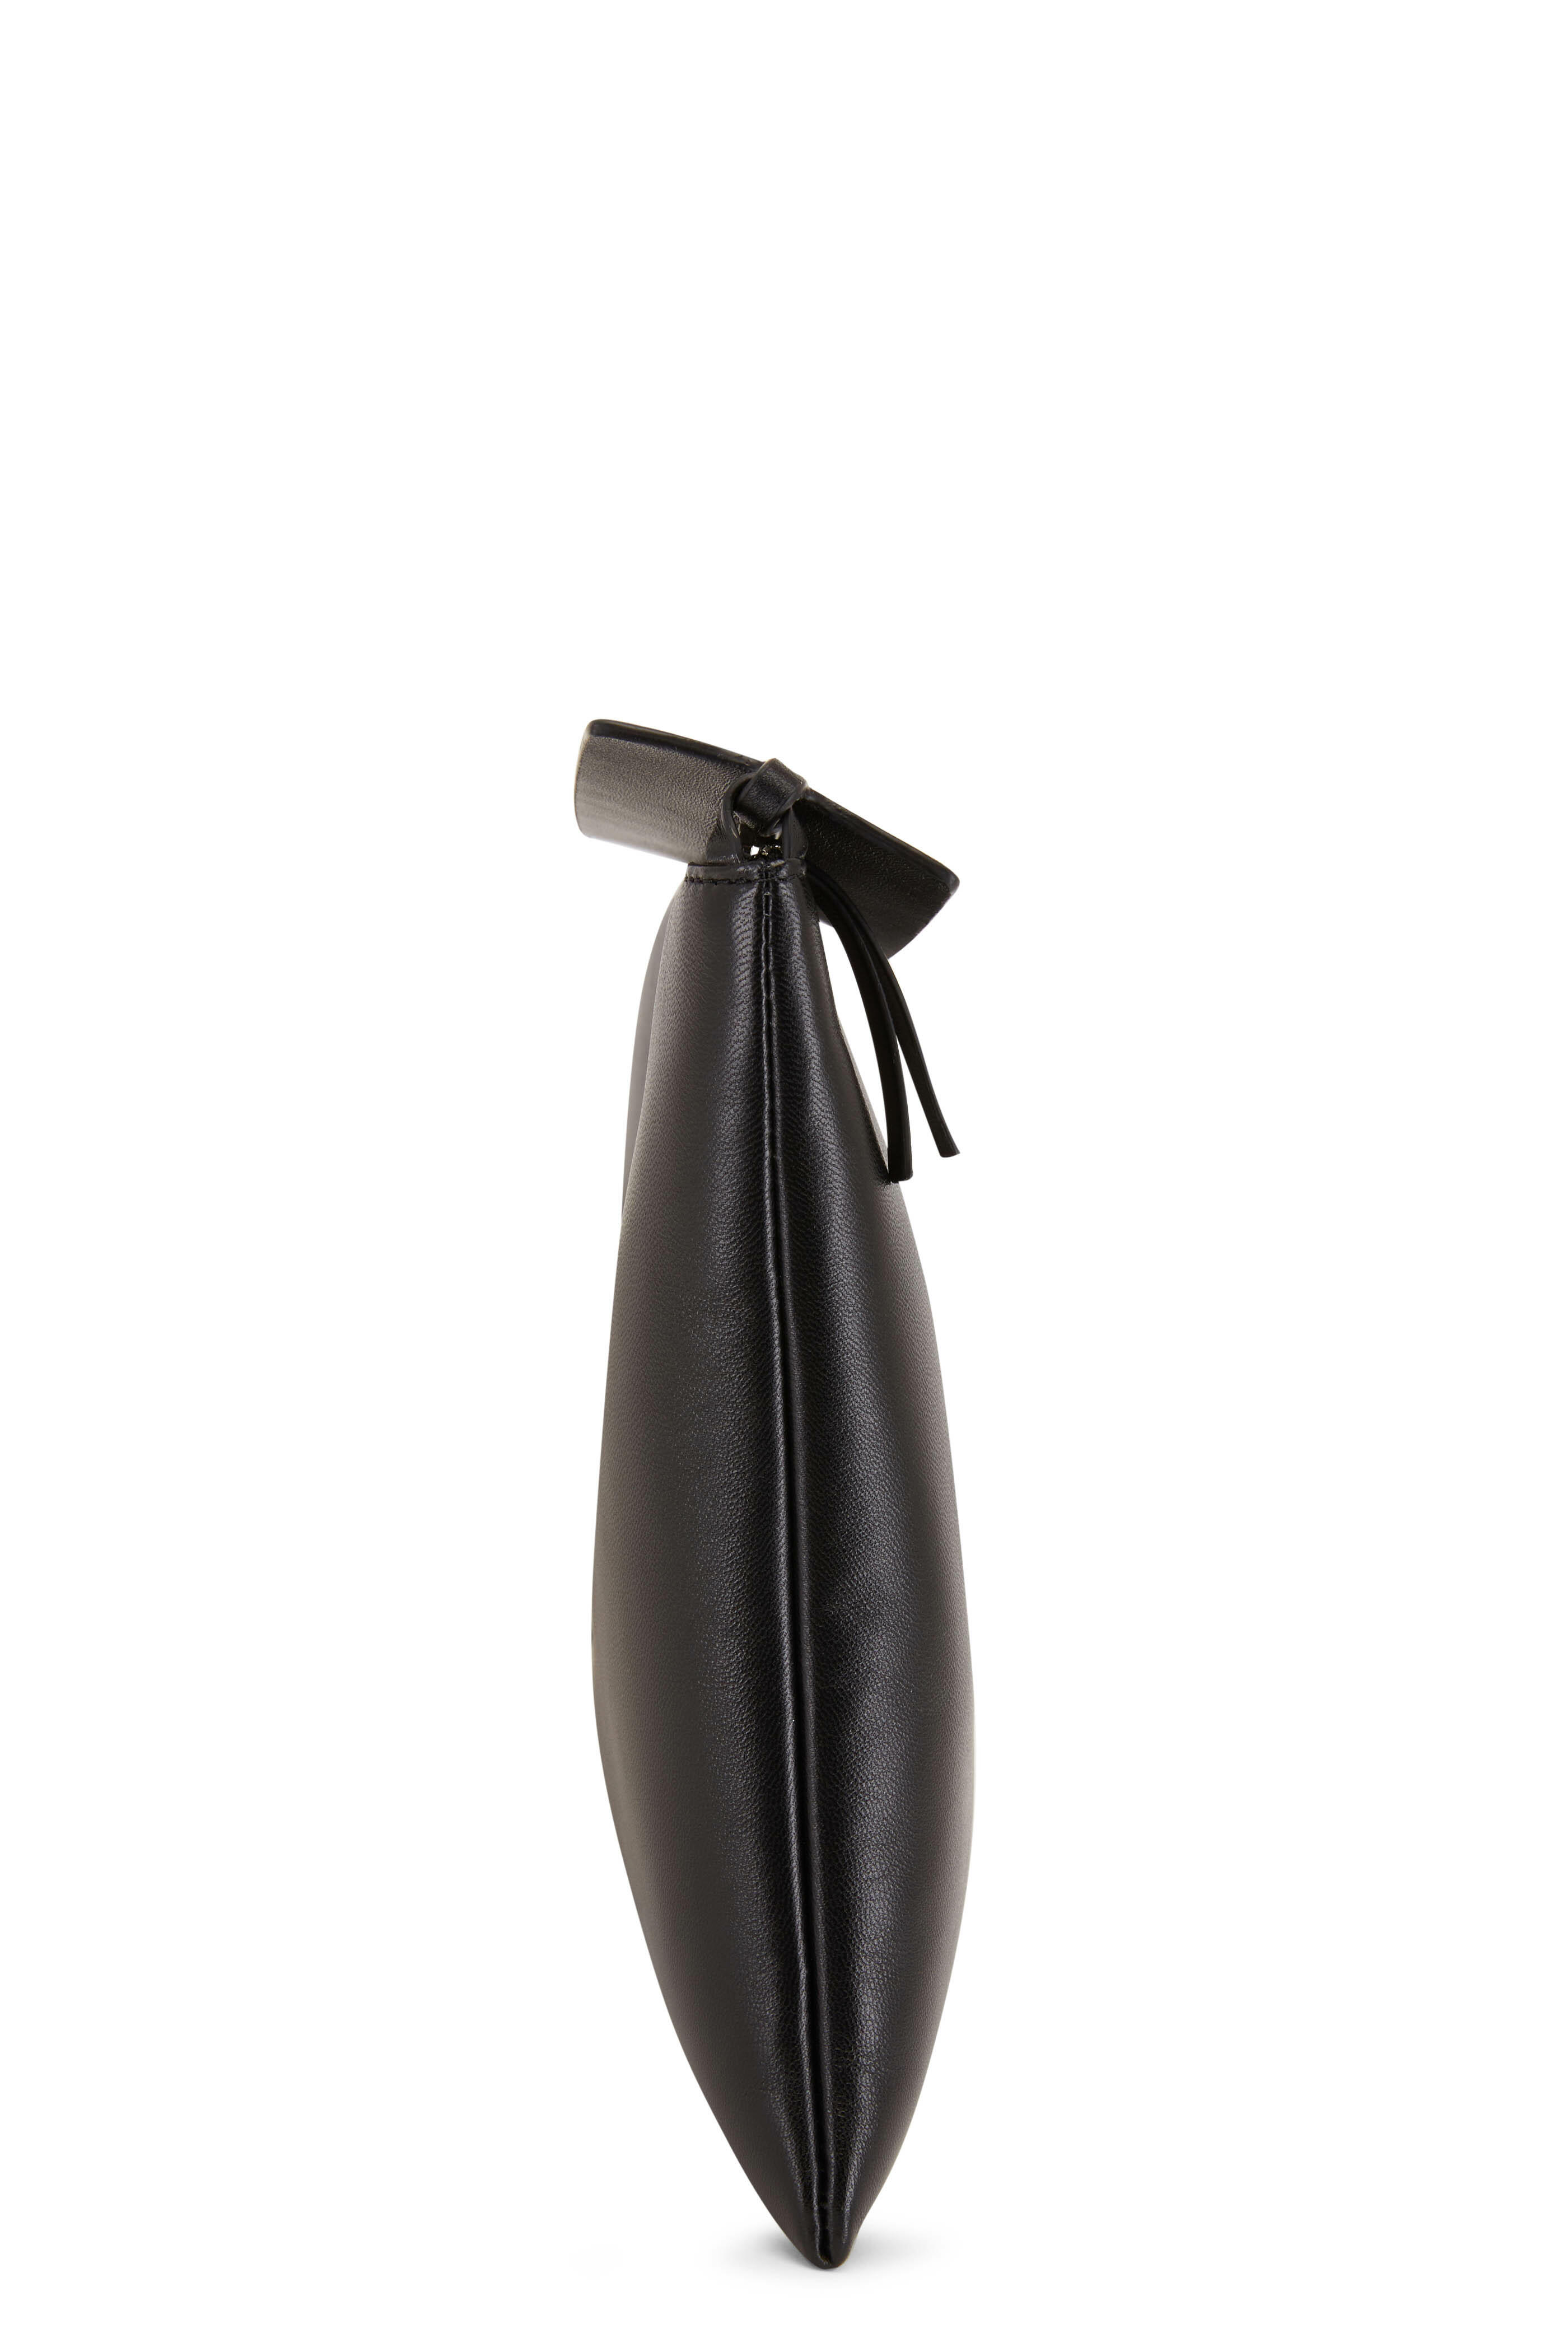 In-the-loop leather handbag Hermès Black in Leather - 30582780